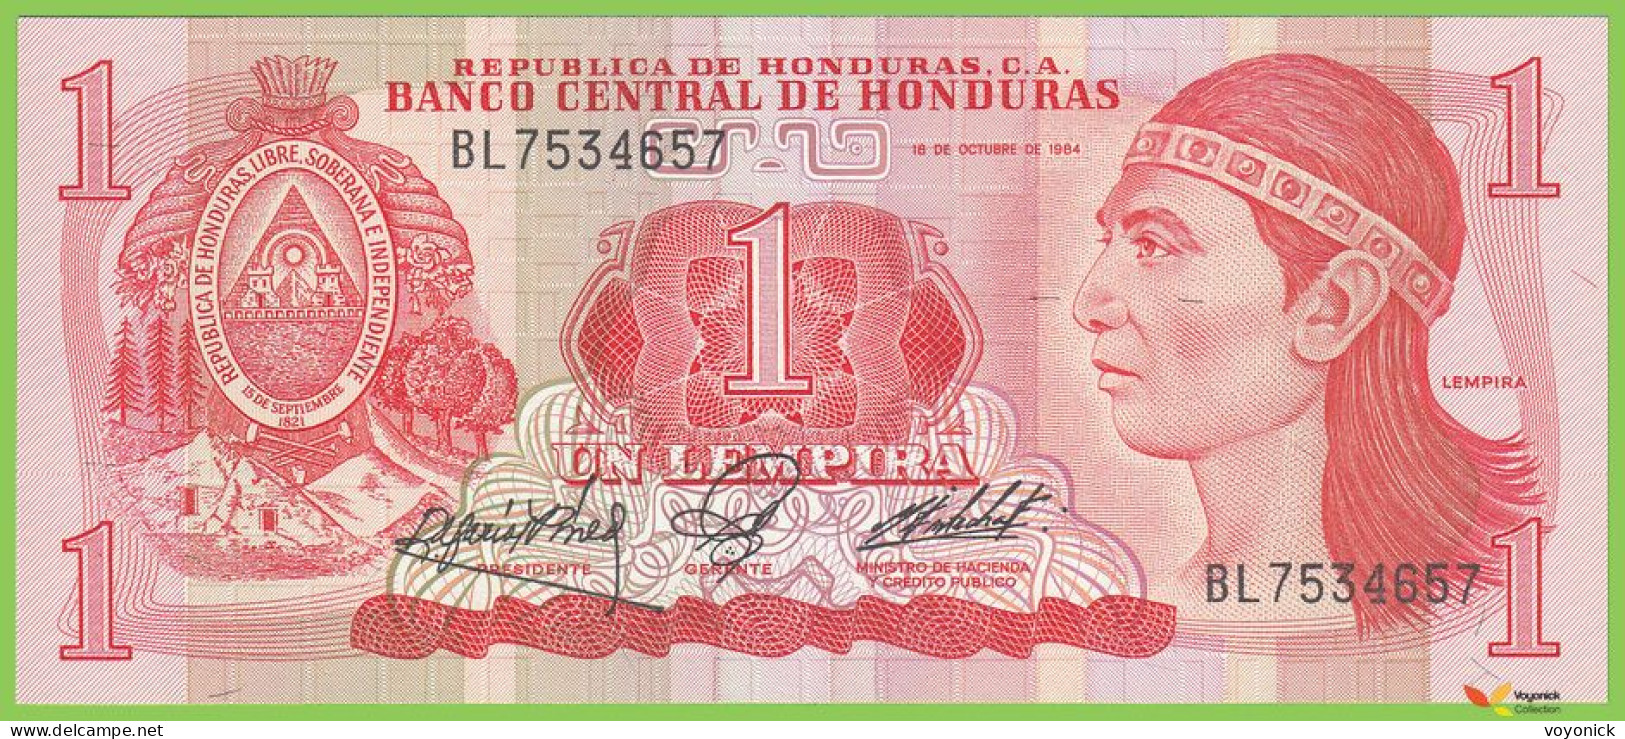 Voyo HONDURAS 1 Lempira 1984 P68b B321b BL UNC - Honduras